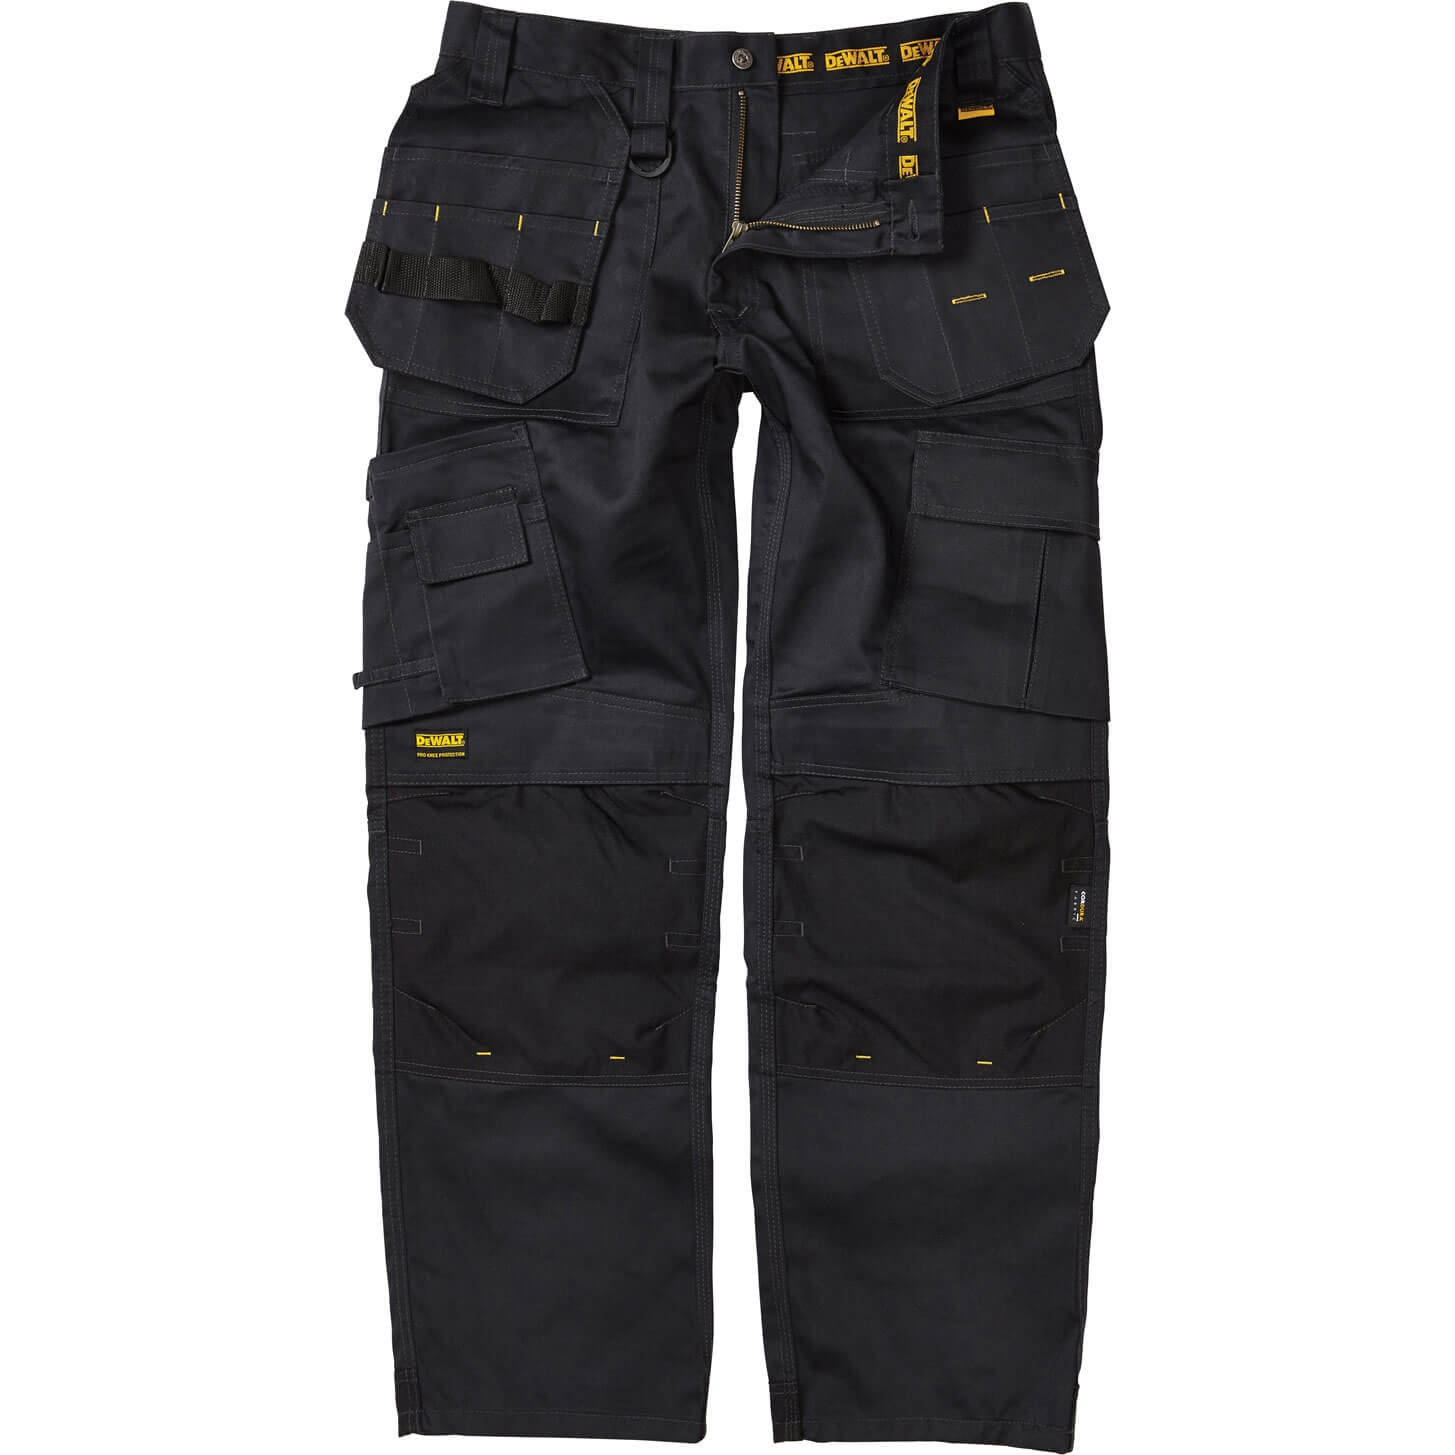 DEWALT Pro Tradesman Black Trousers Waist 36in Leg 31in DEWPROT3631 